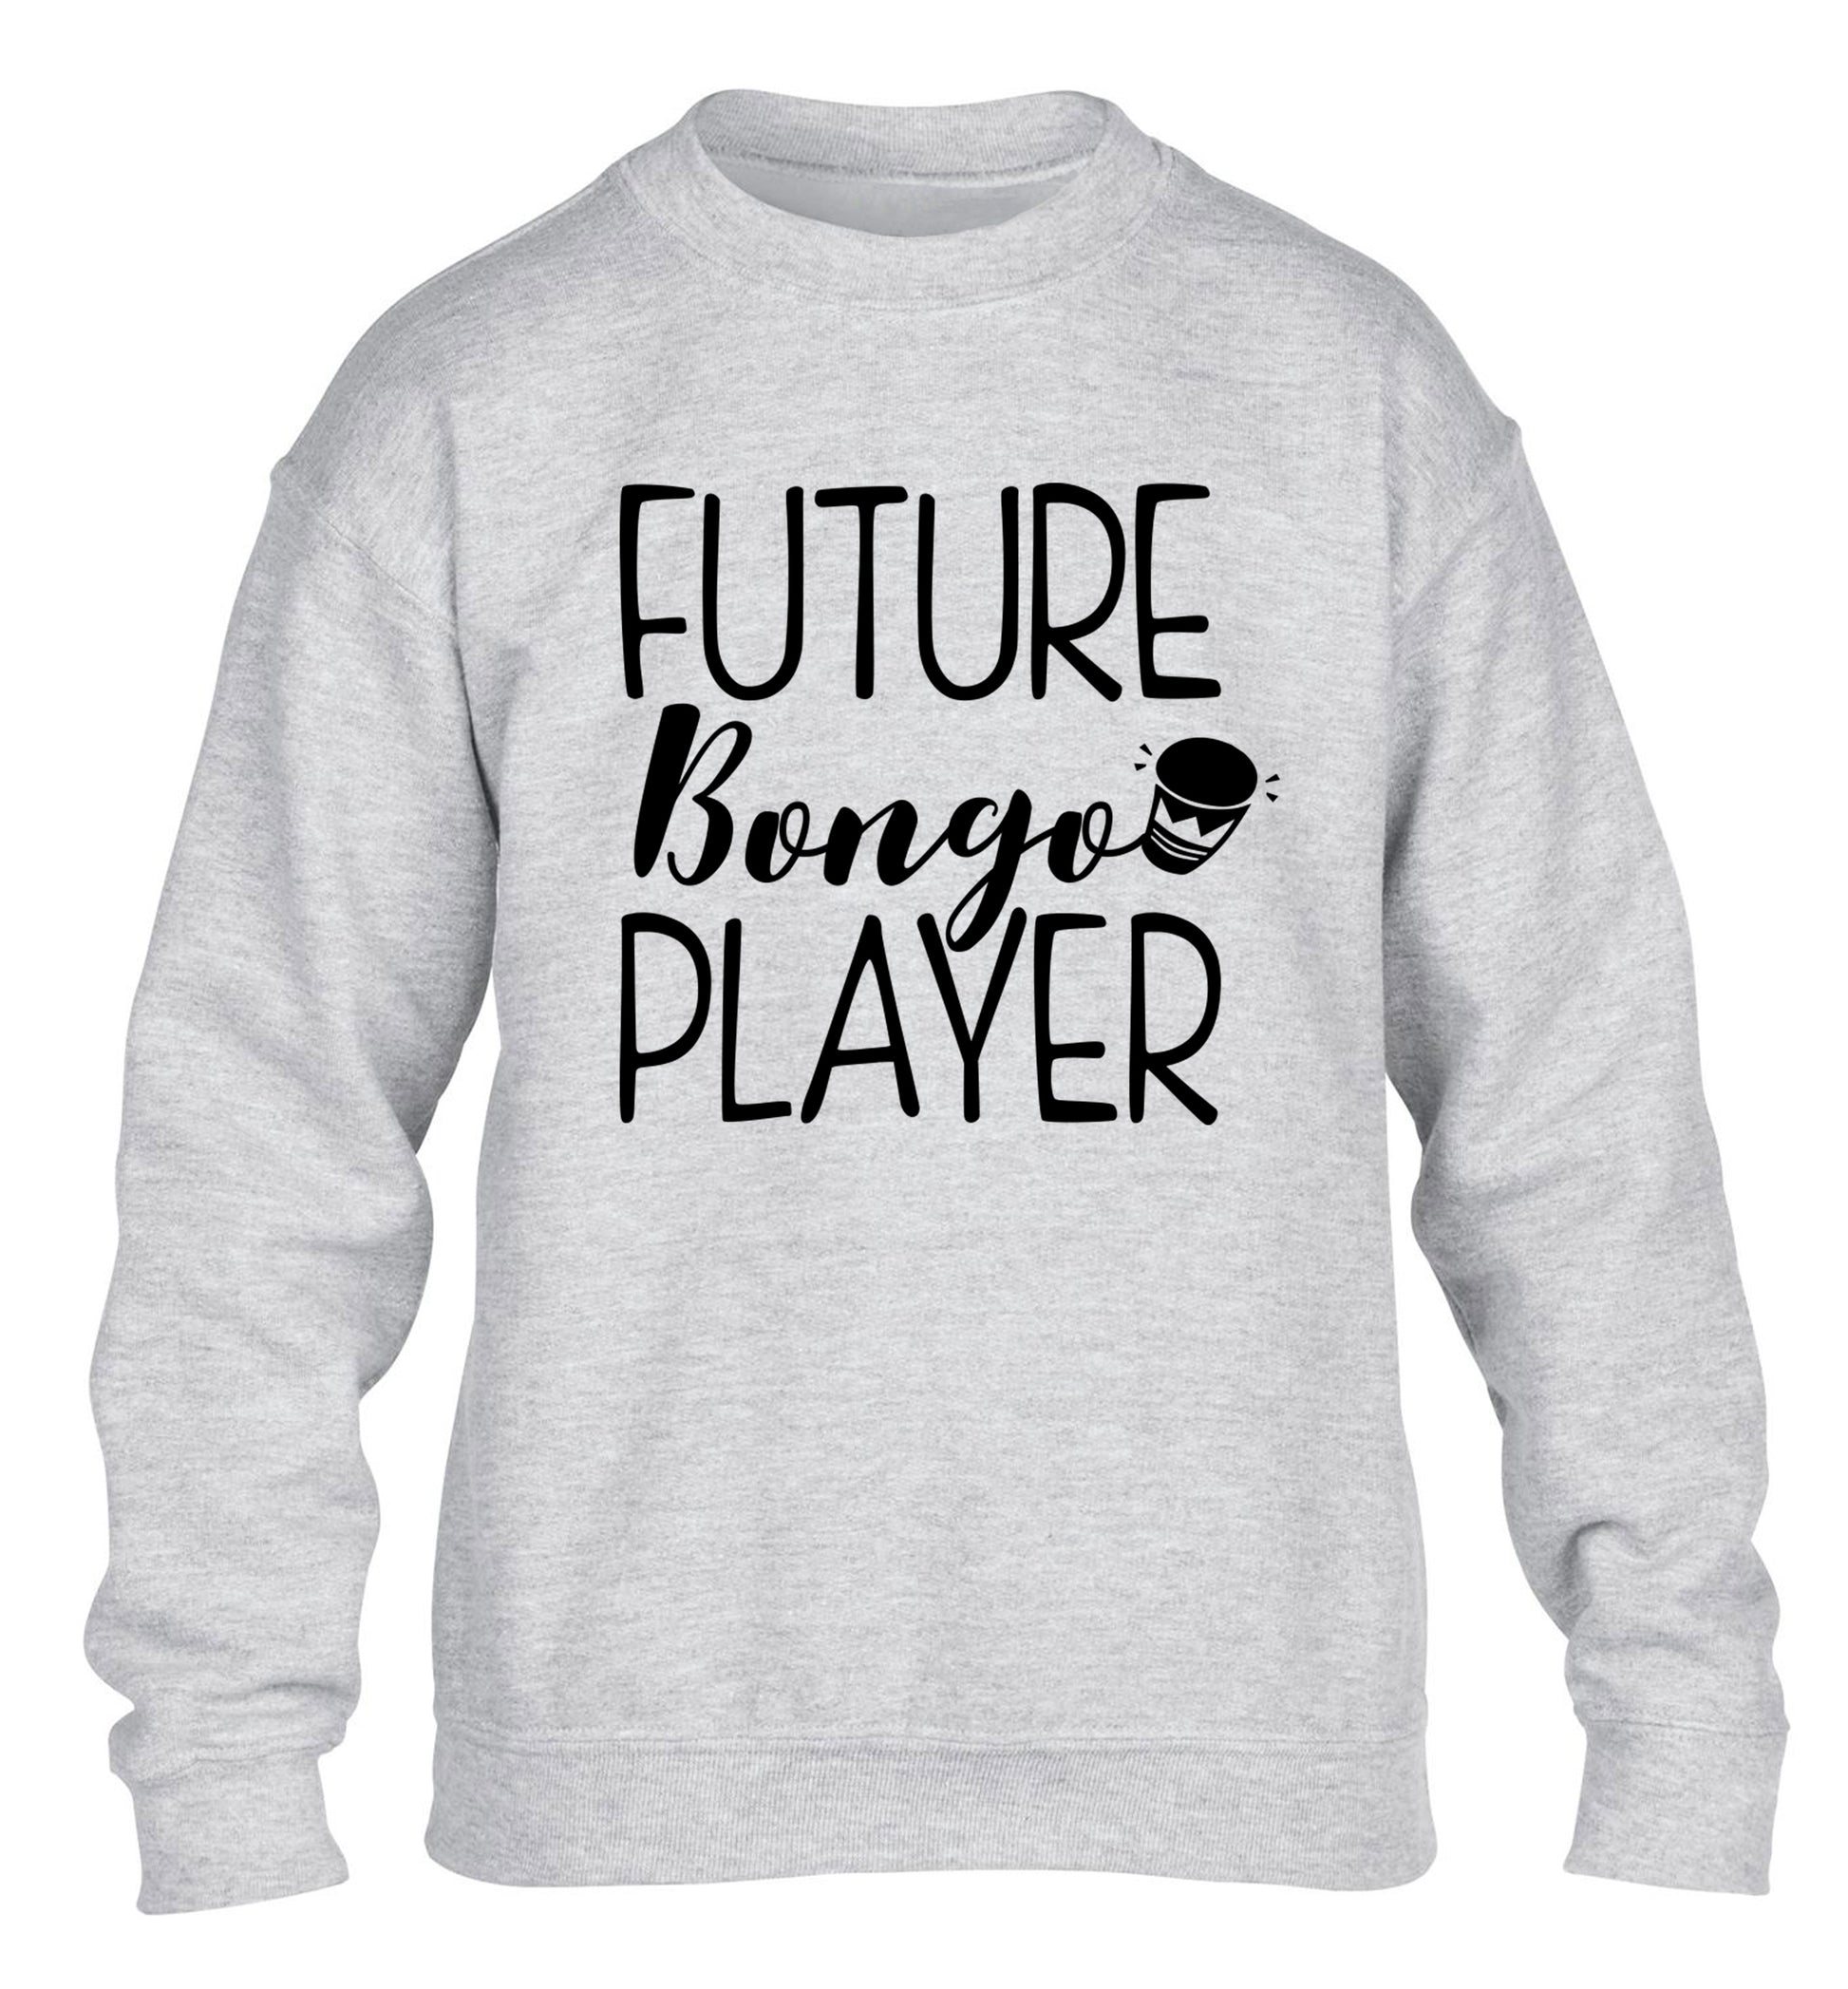 Future bongo player children's grey sweater 12-14 Years